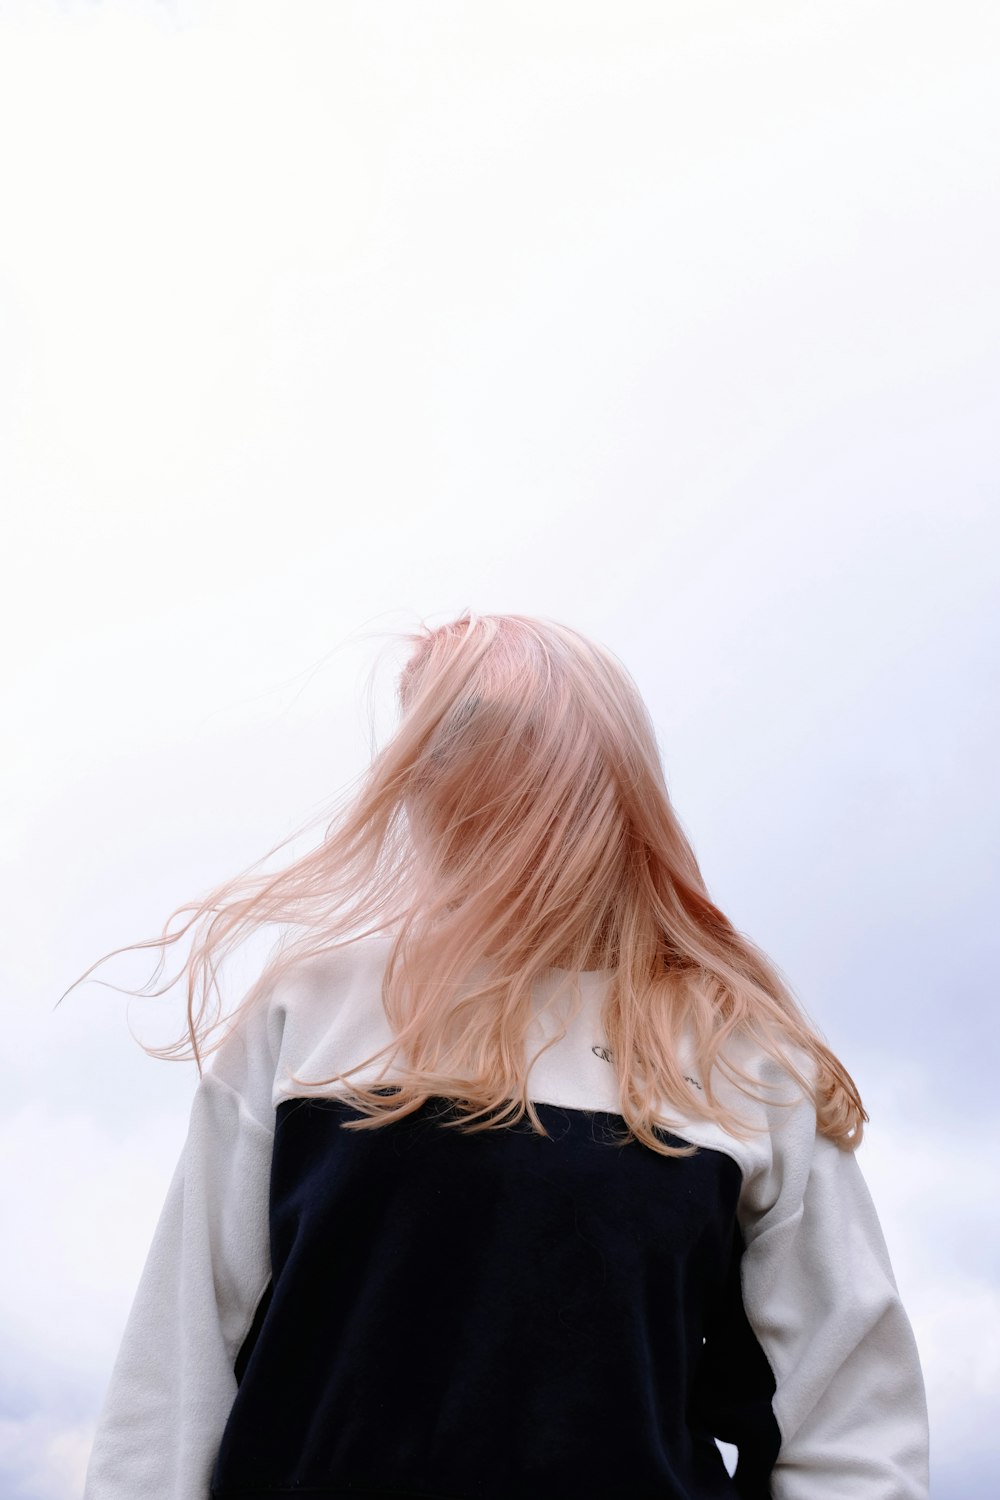 흐린 하늘 앞에 서 있는 분홍색 머리를 가진 여자